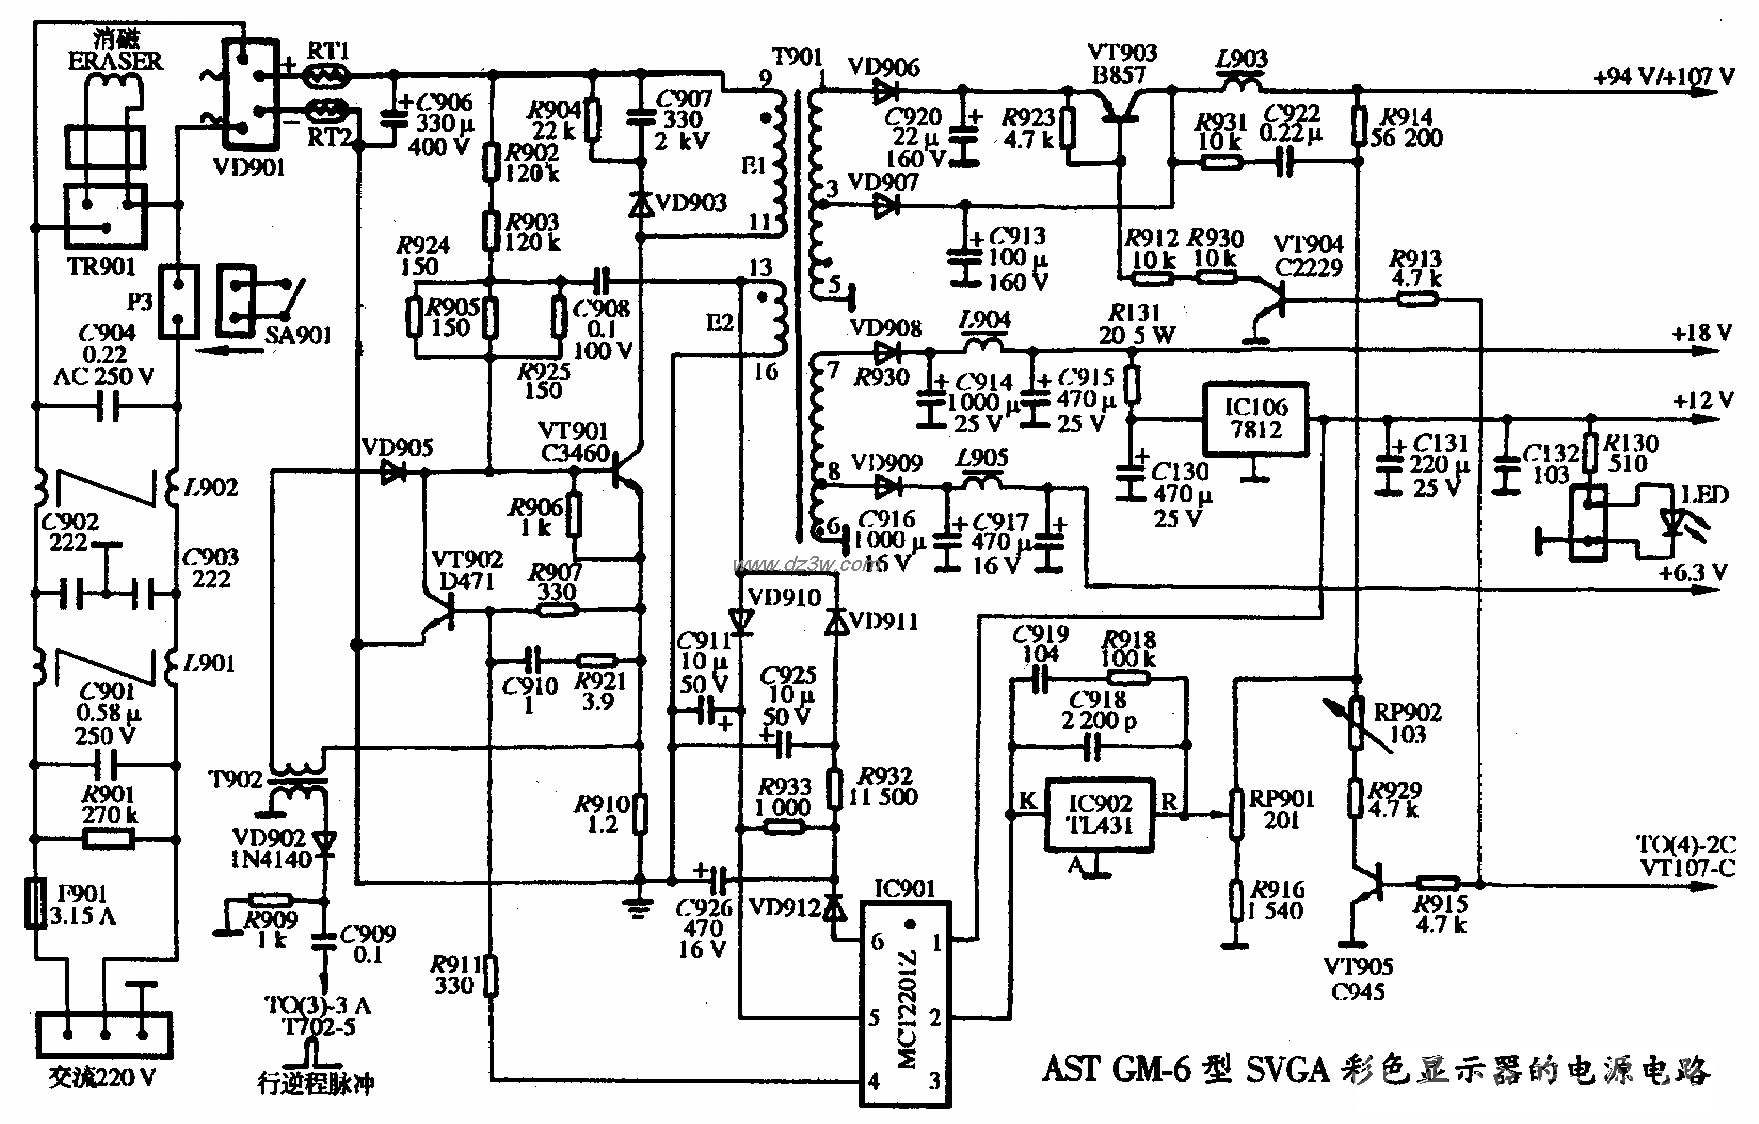 AST GM-6型SVGA彩色顯示器的電源電路圖